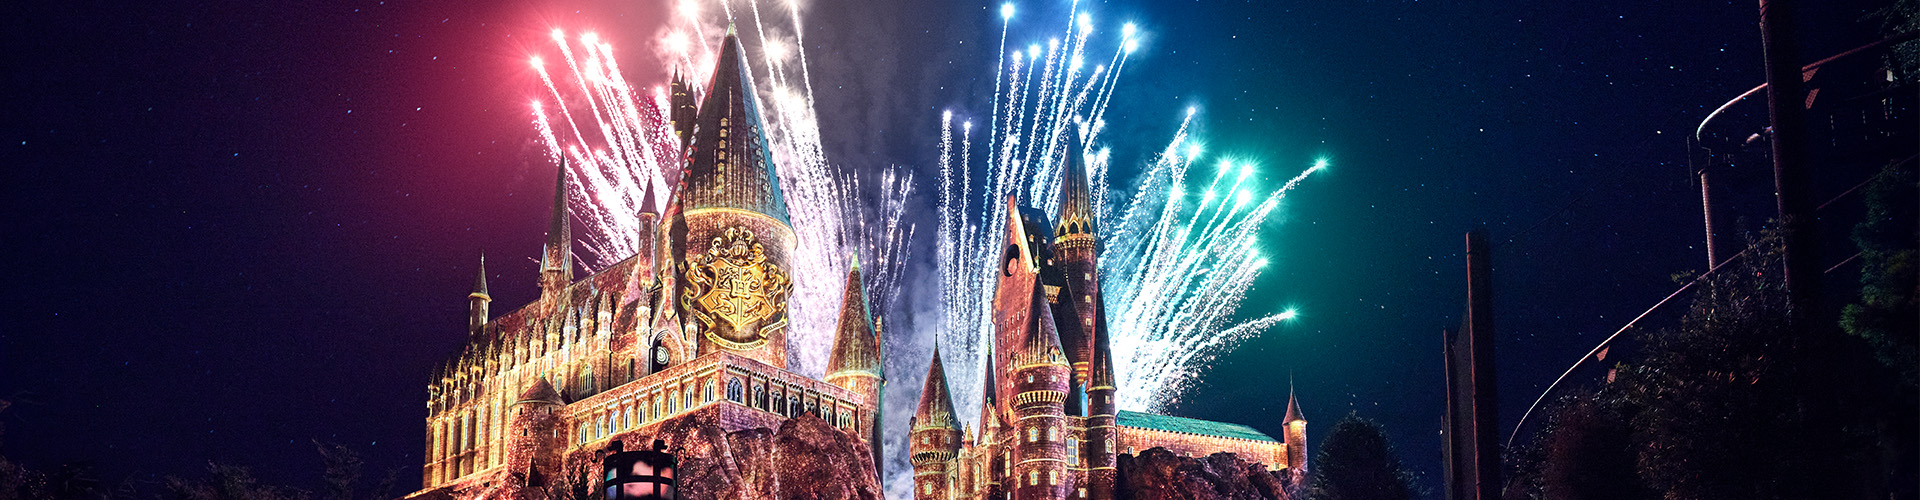 Fireworks light up the sky above Hogwarts Castle